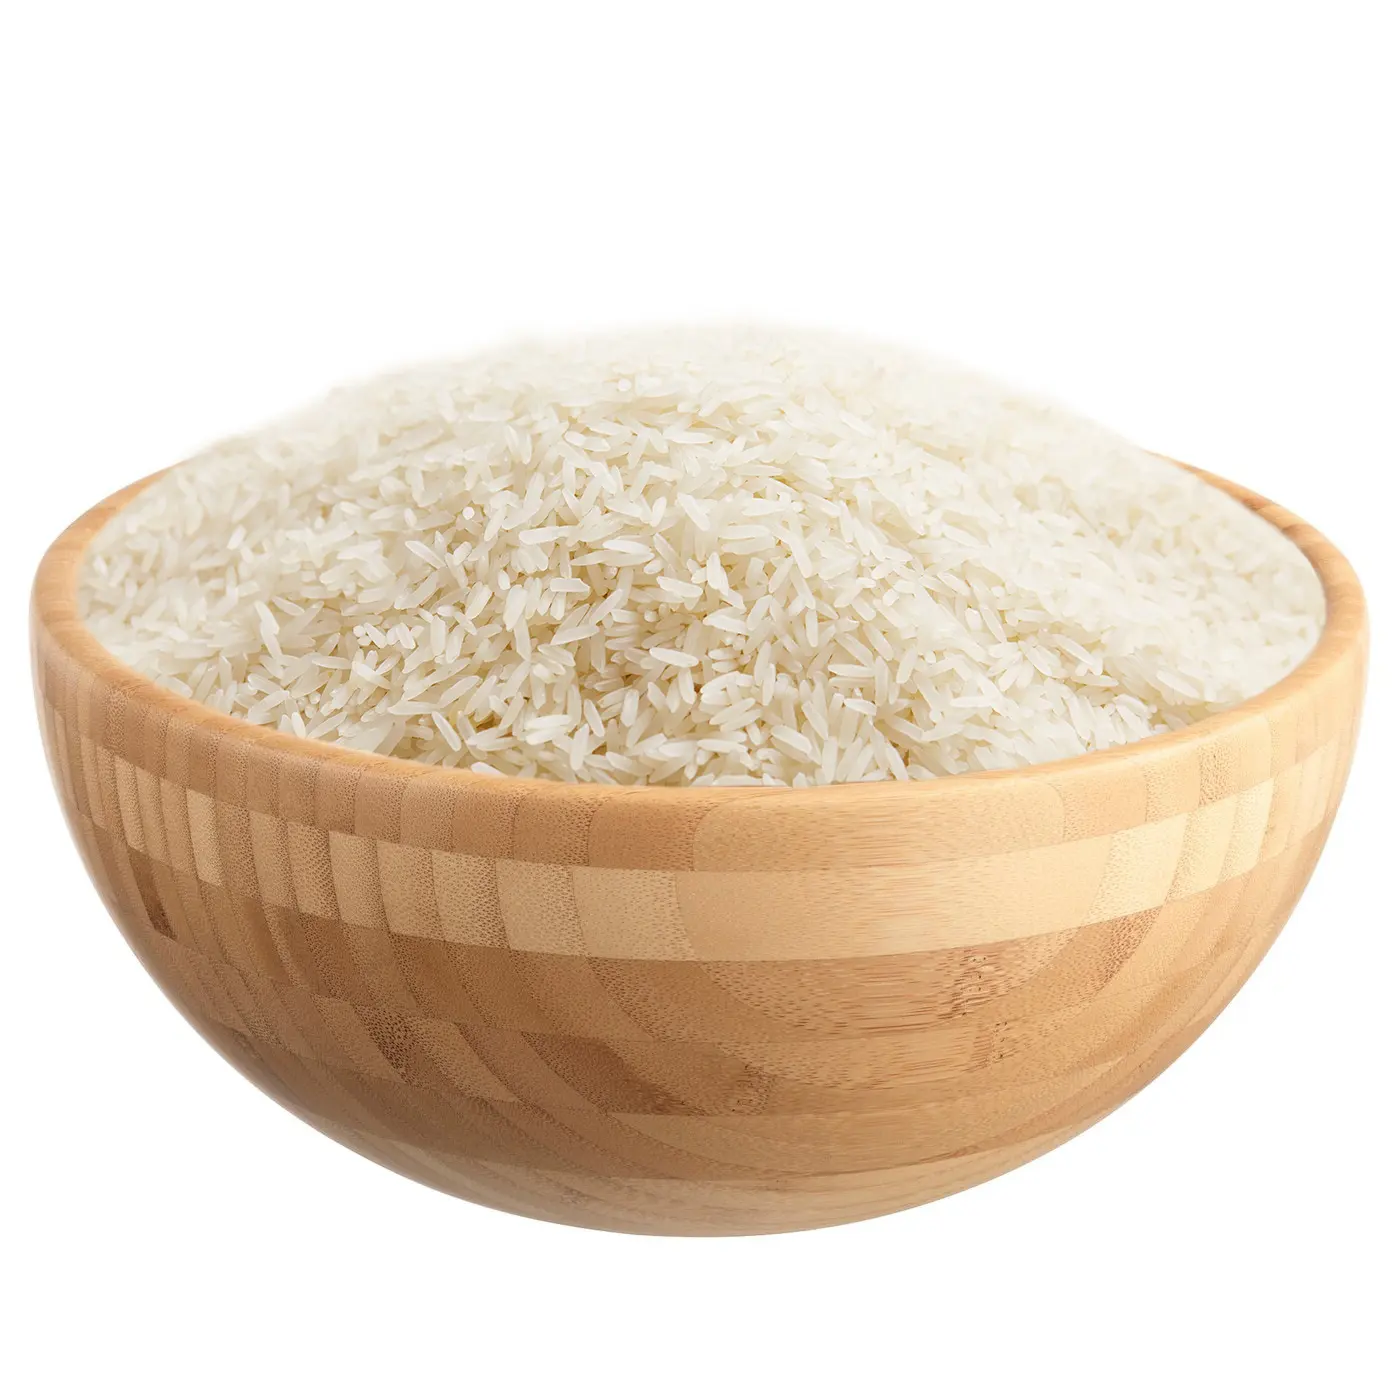 التايلاندية أرز ياسمين تايلند هوم مالي 105 أرز أبيض أرز طويل الحبة